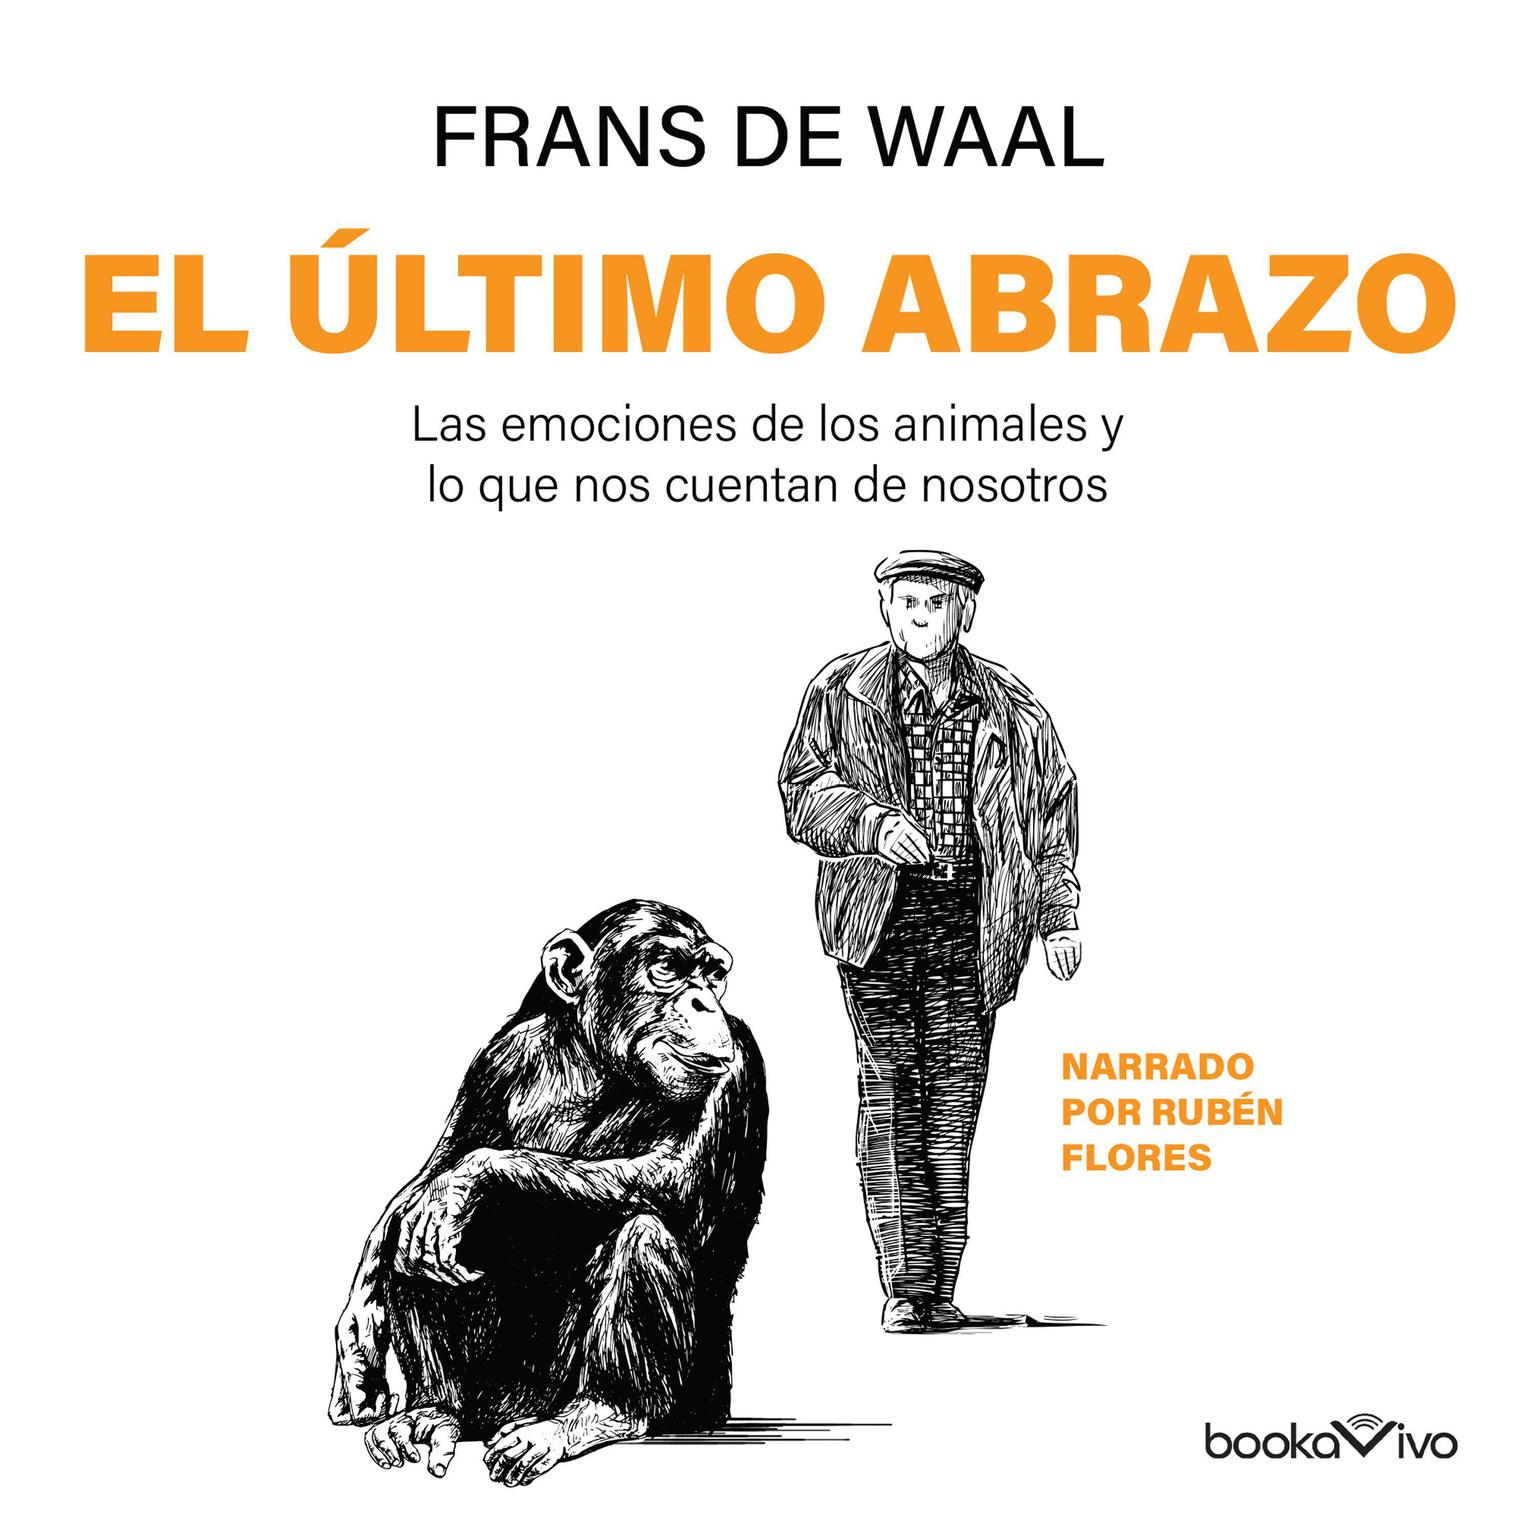 El Último abrazo: Las emociones de los animales y lo que nos cuentan de nosotros (Animal Emotions and What They Tell Us About Ourselves) Audiobook, by Frans de Waal